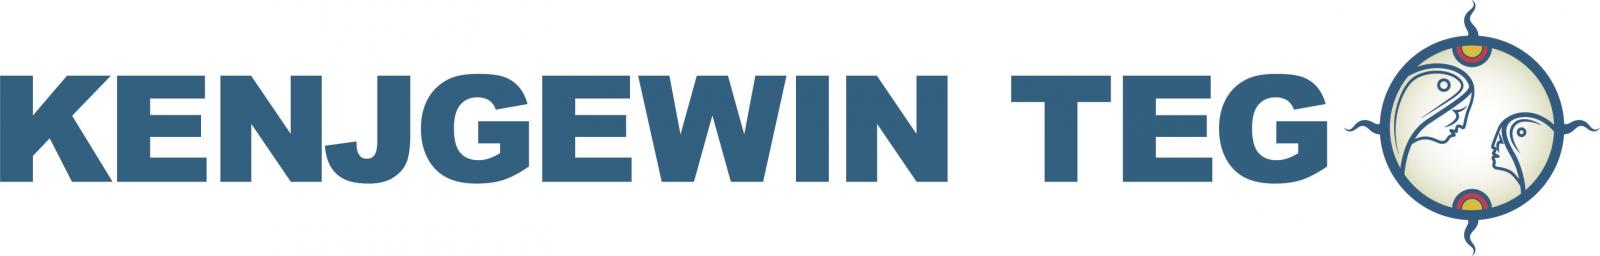 KenjgewinTeg logo